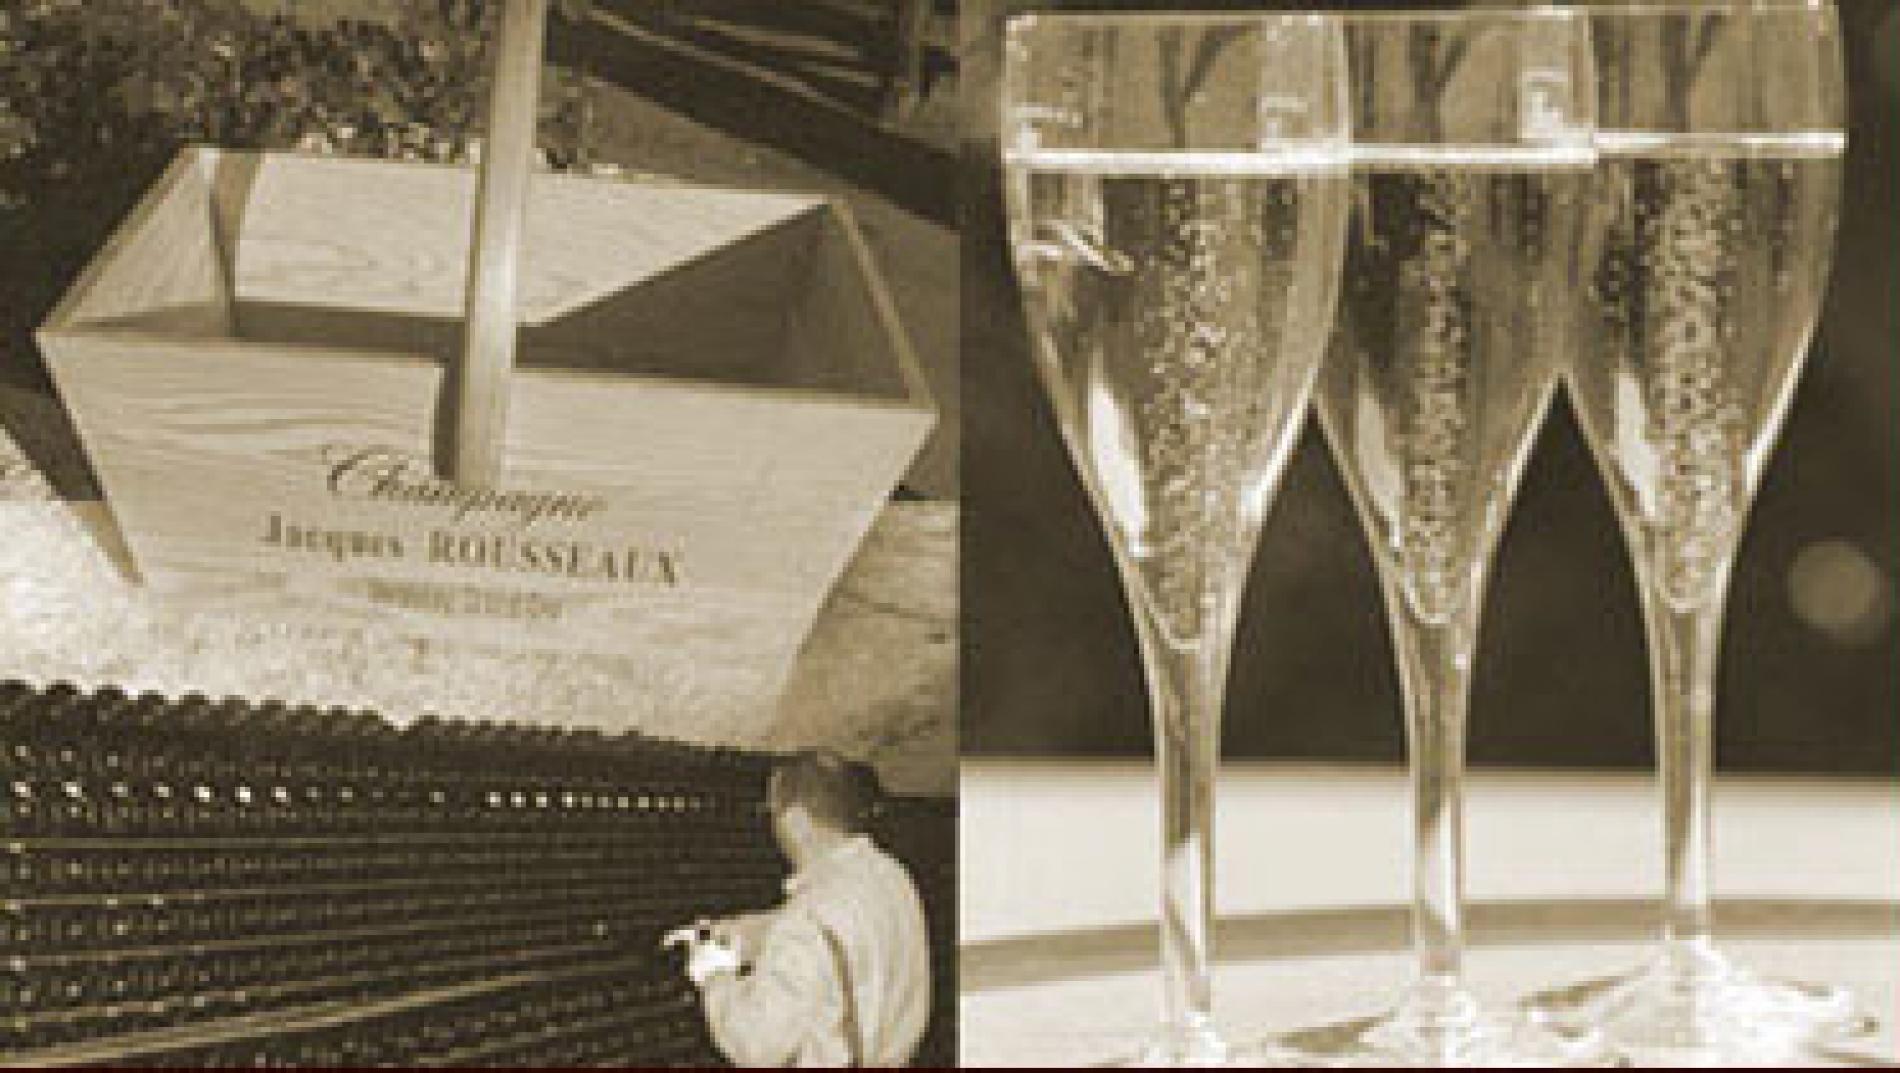 Champagne Jacques Rousseaux